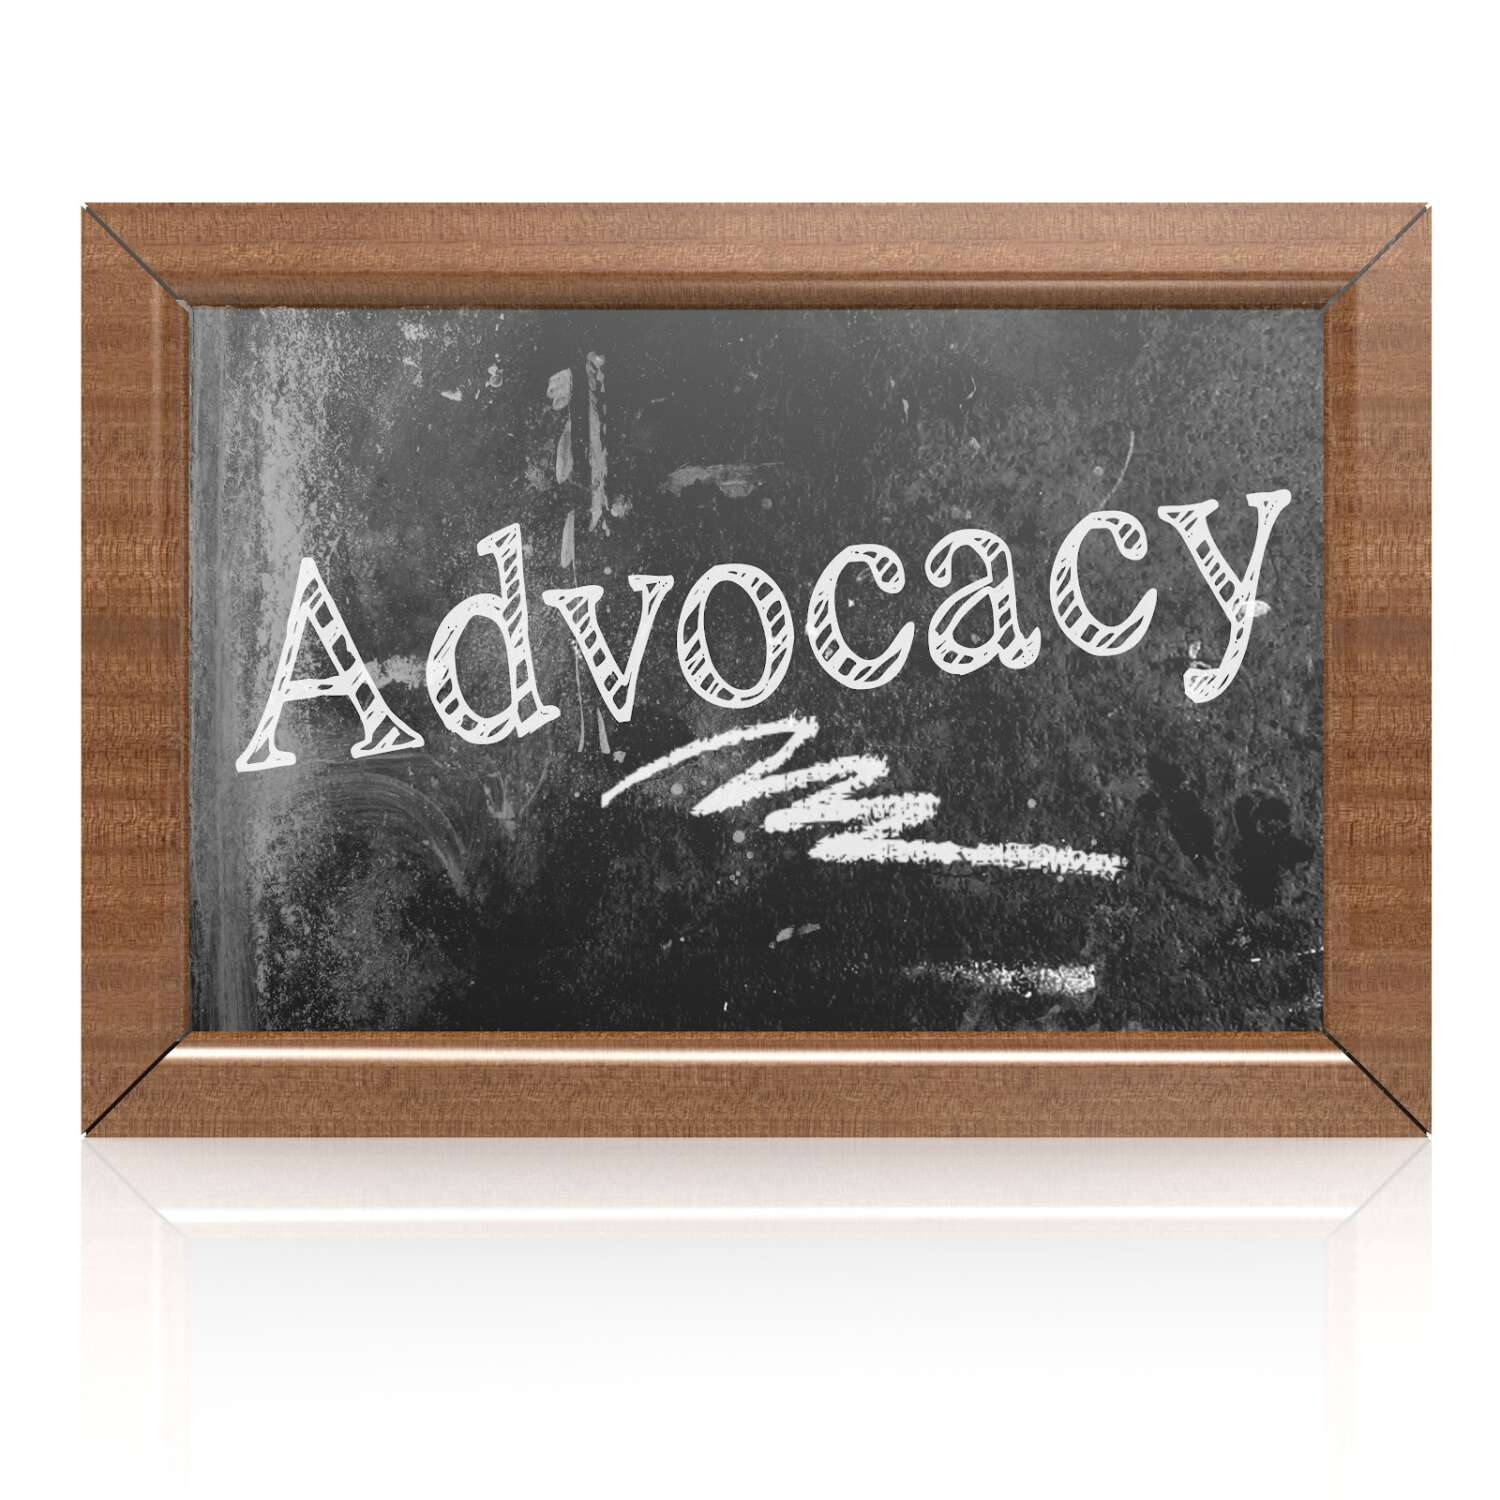 Advocacy text written on blackboard, 3D rendering